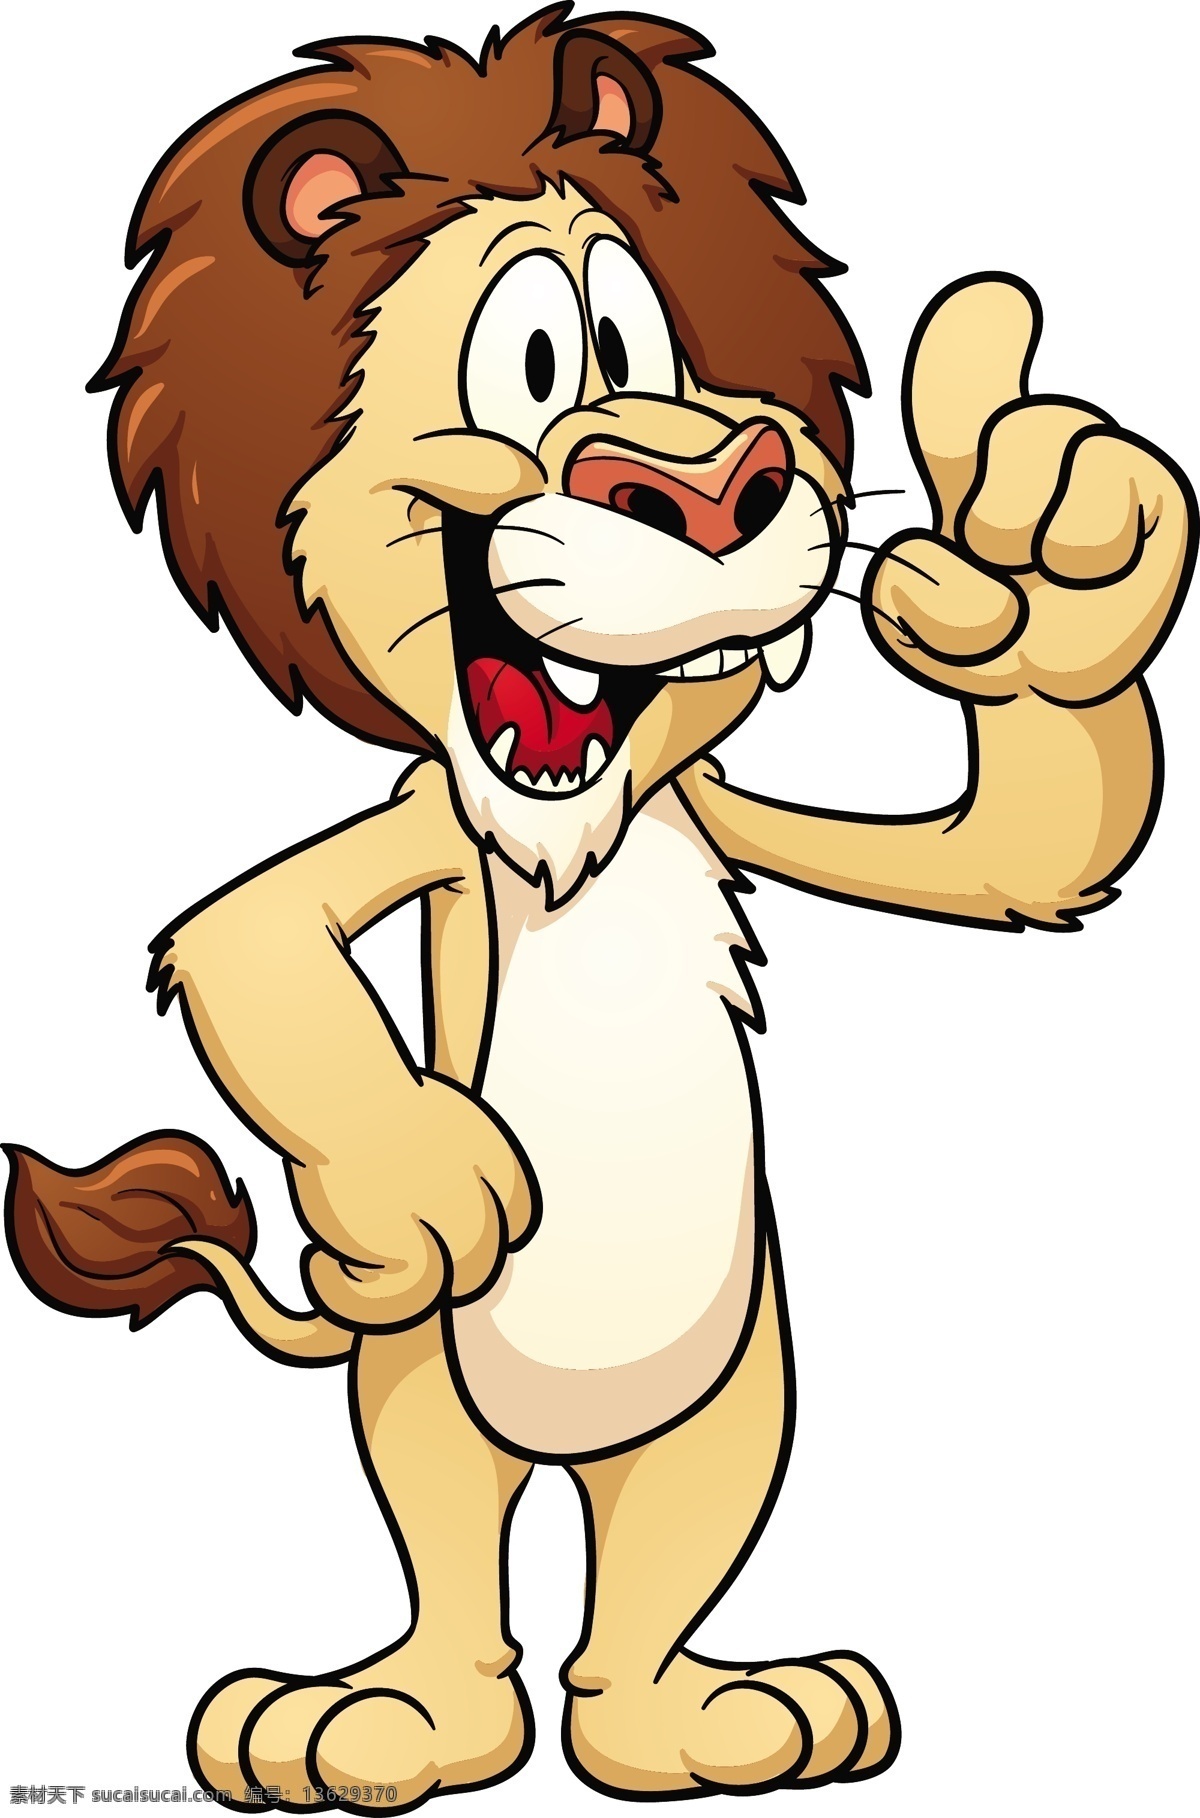 动画 动漫 儿童卡通 卡通 卡通背景 卡通人物 卡通设计 狮子 狮子矢量素材 狮子模板下载 雄狮 卡通角色 动画片角色 矢量 psd源文件